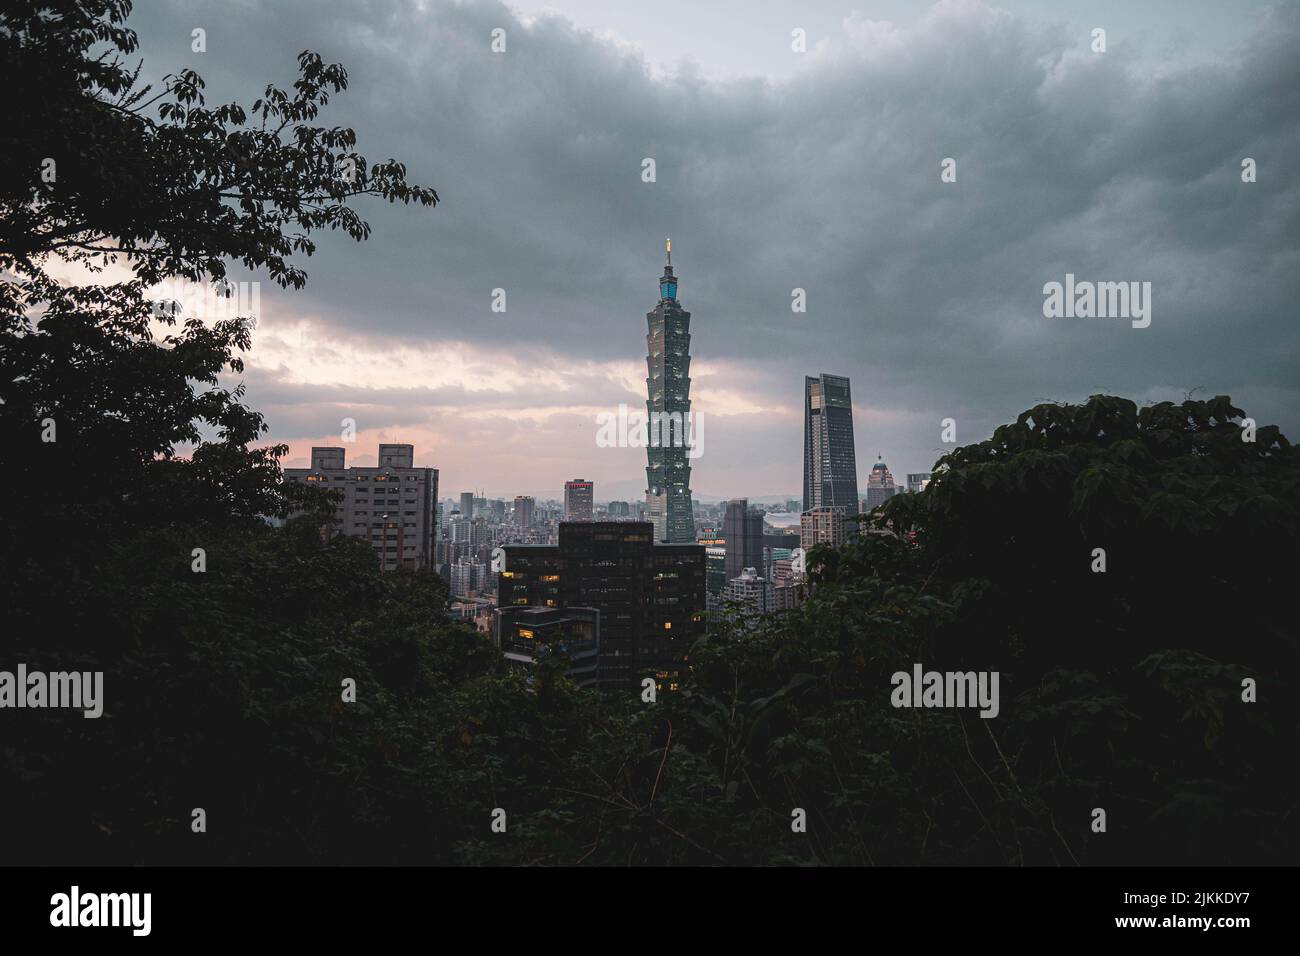 Ein malerischer Blick auf das Taipei 101 Observatorium gegen grüne Bäume in Taiwan an einem düsteren Tag Stockfoto